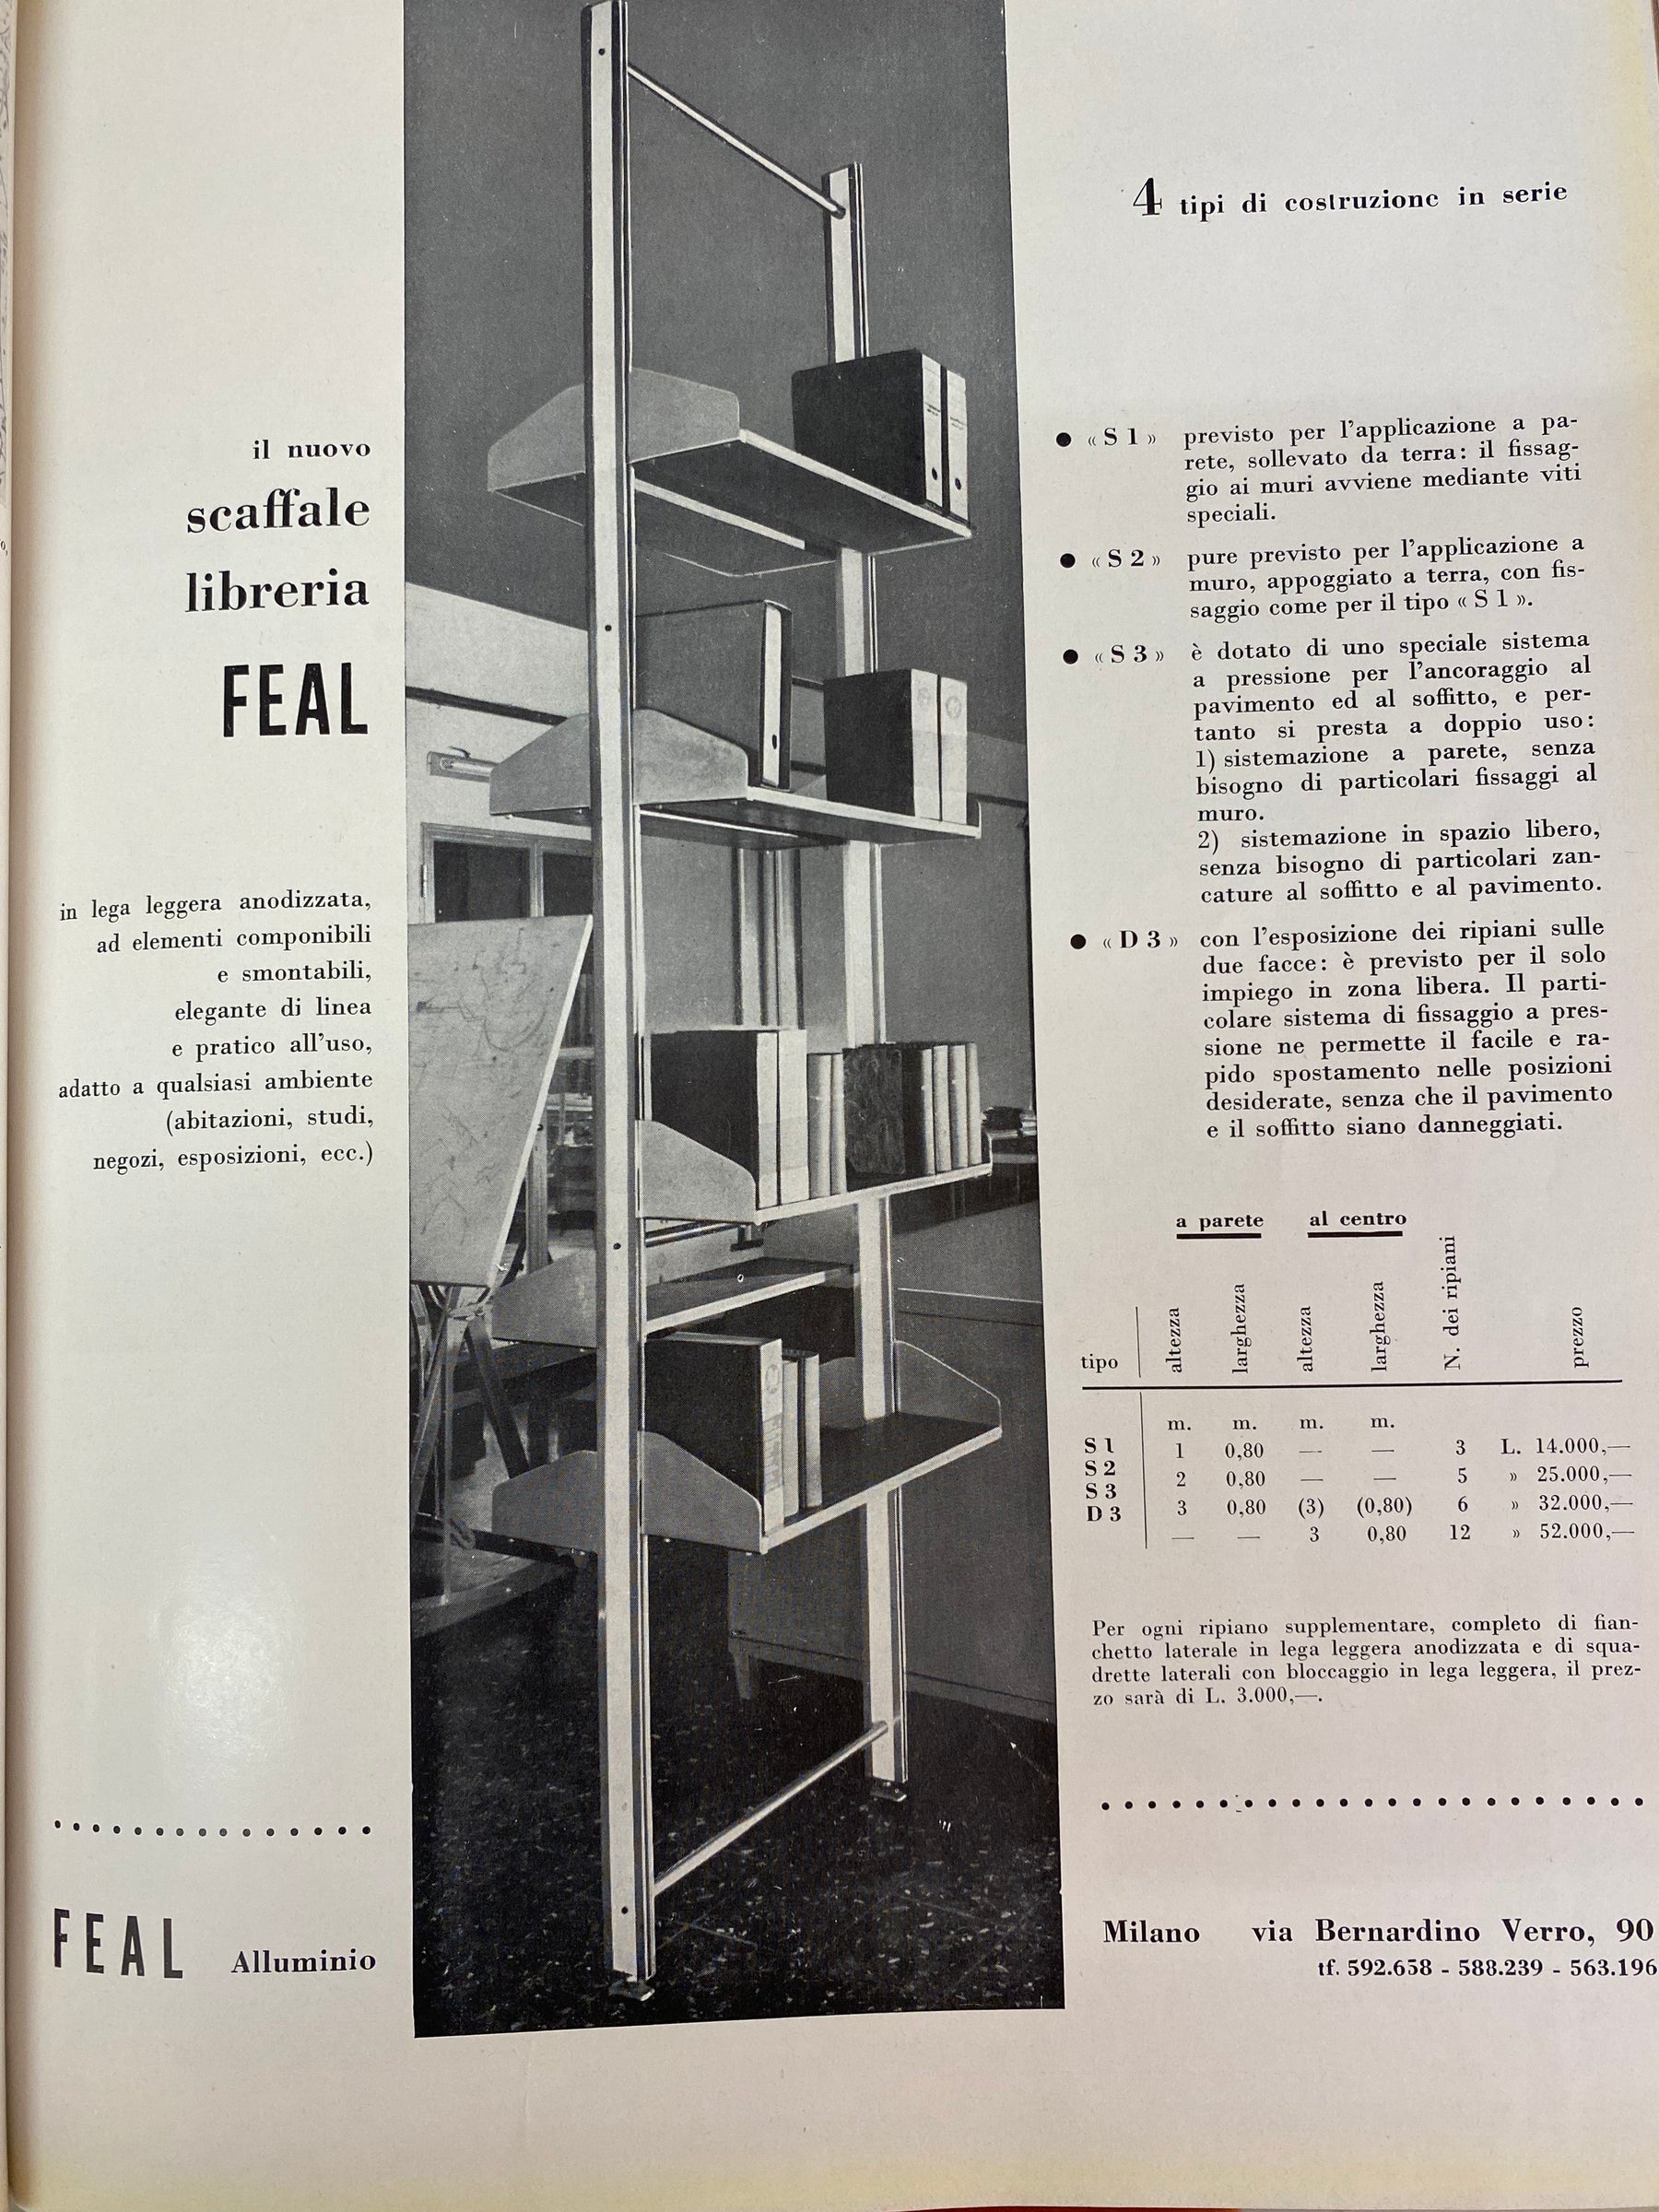 Wall Shelf, Aluminium and Wood, Feal, Milan, 60s